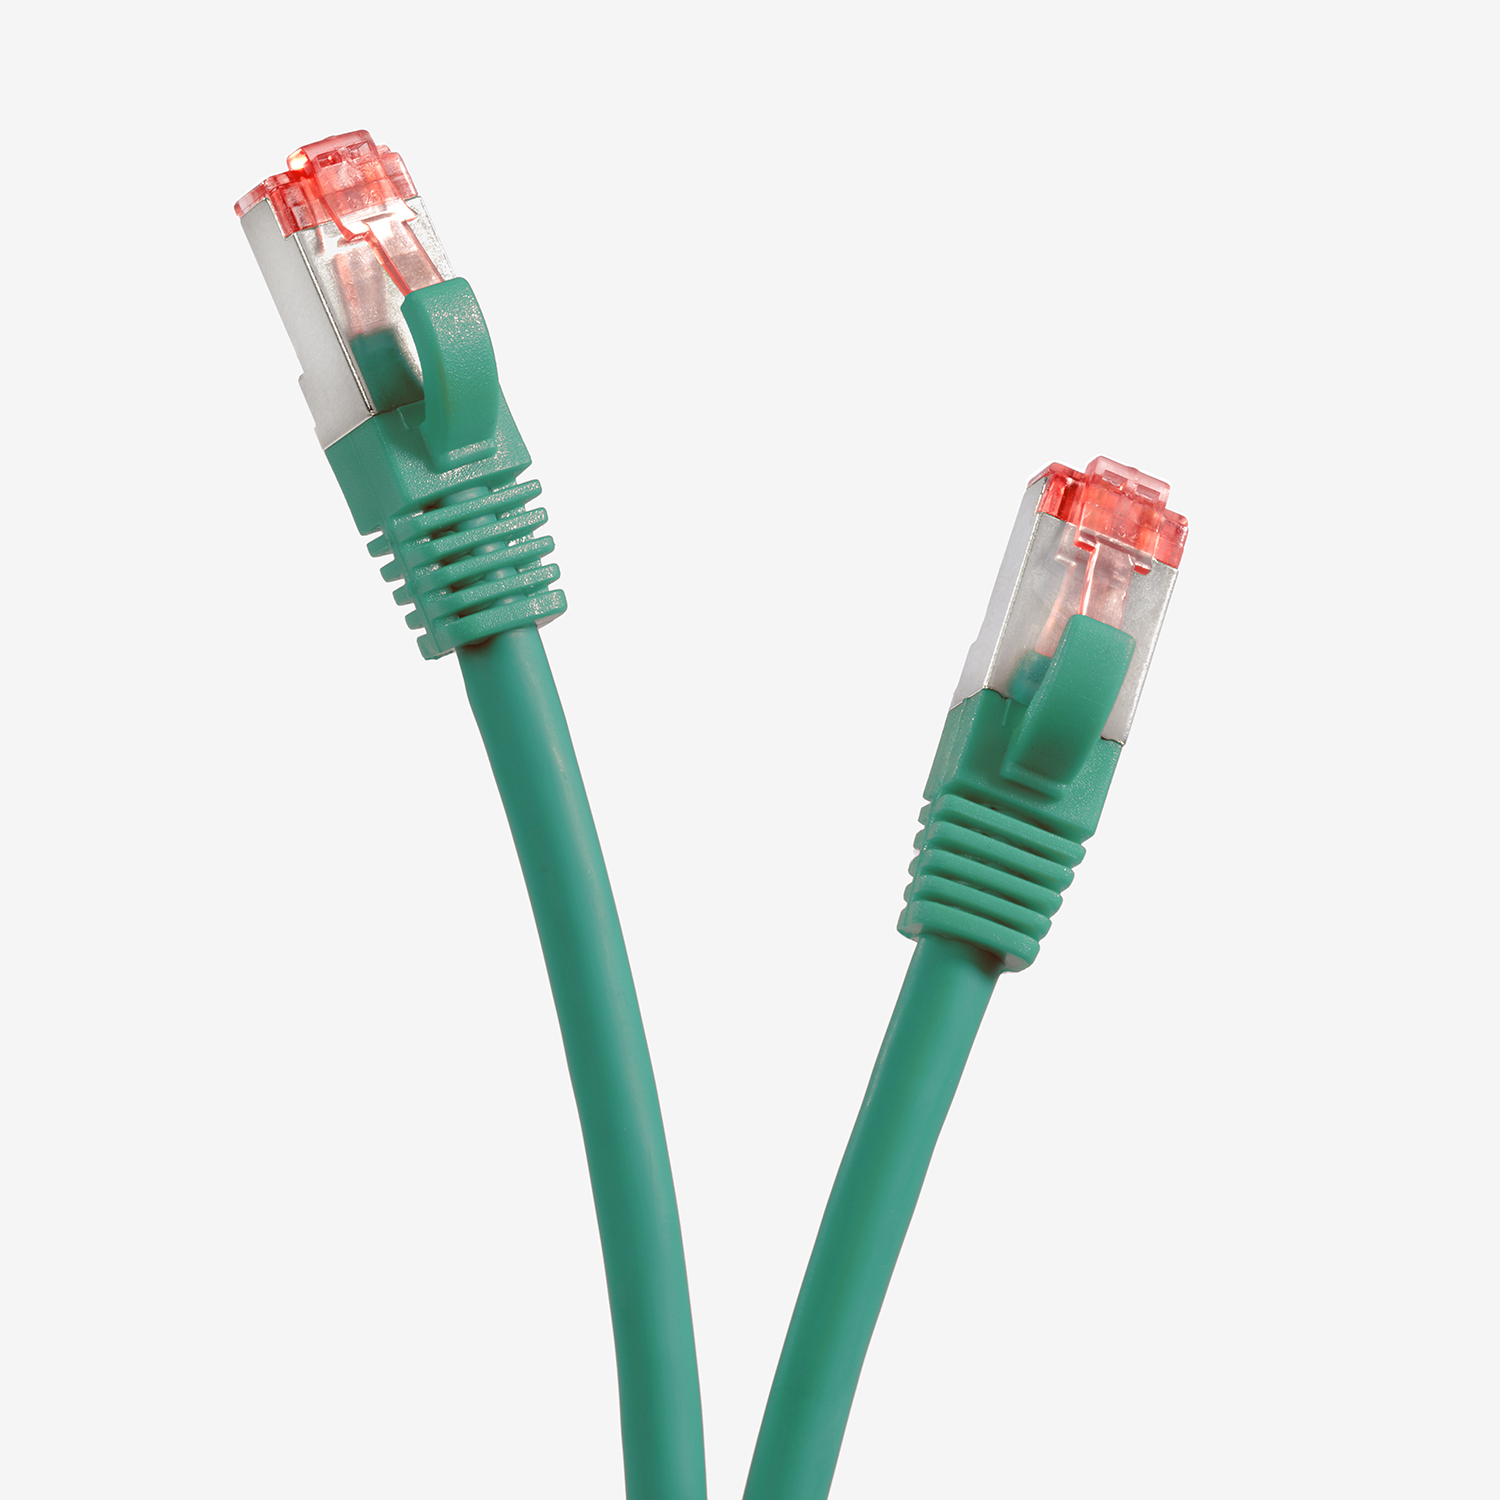 TPFNET 5er Pack S/FTP Patchkabel 2 m 1000Mbit, Netzwerkkabel grün, 2m / Netzwerkkabel